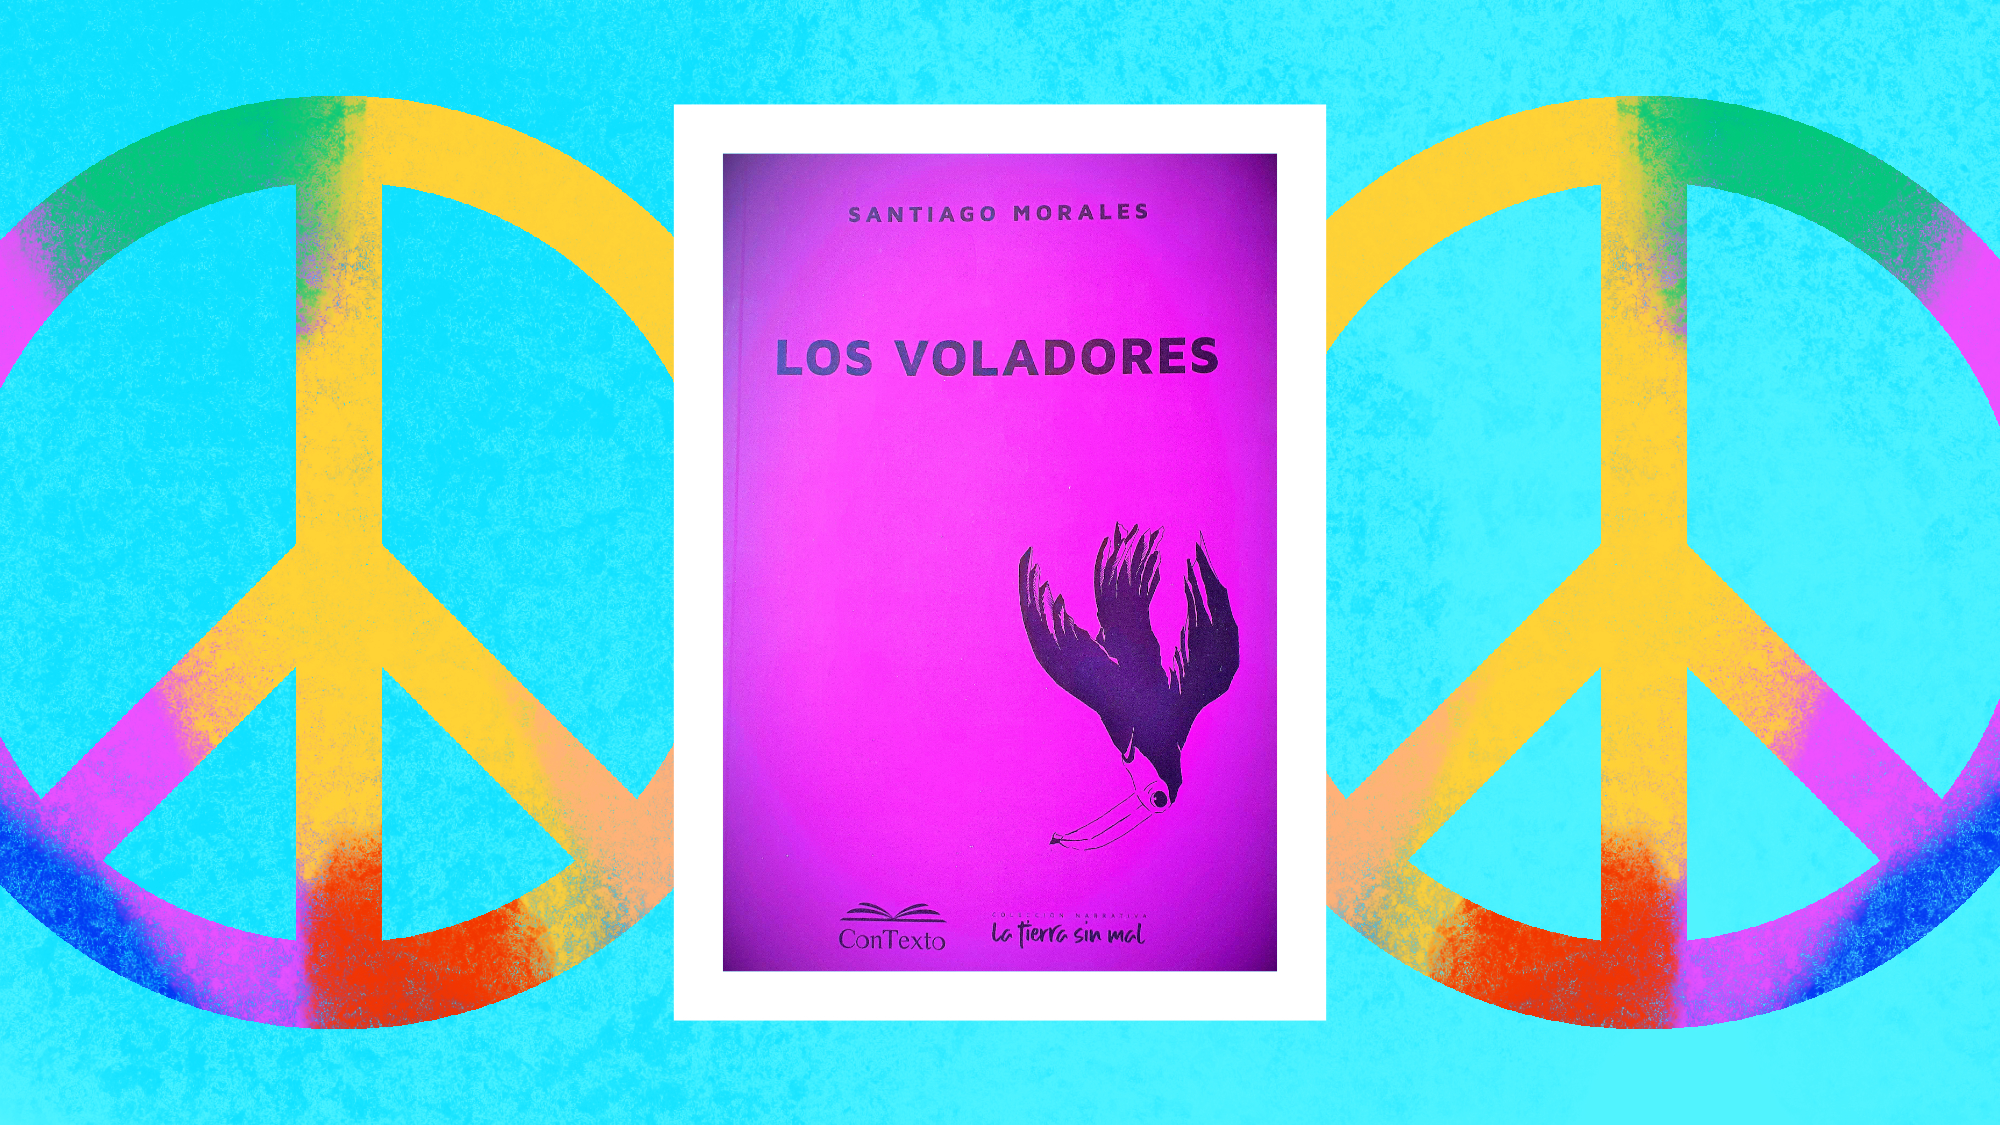 Reseña de Los Voladores de Santiago Morales: dos símbolos de la paz enmarcan la tapa del libro, que es rosada e incluye la imagen de un ave negra cayéndose.